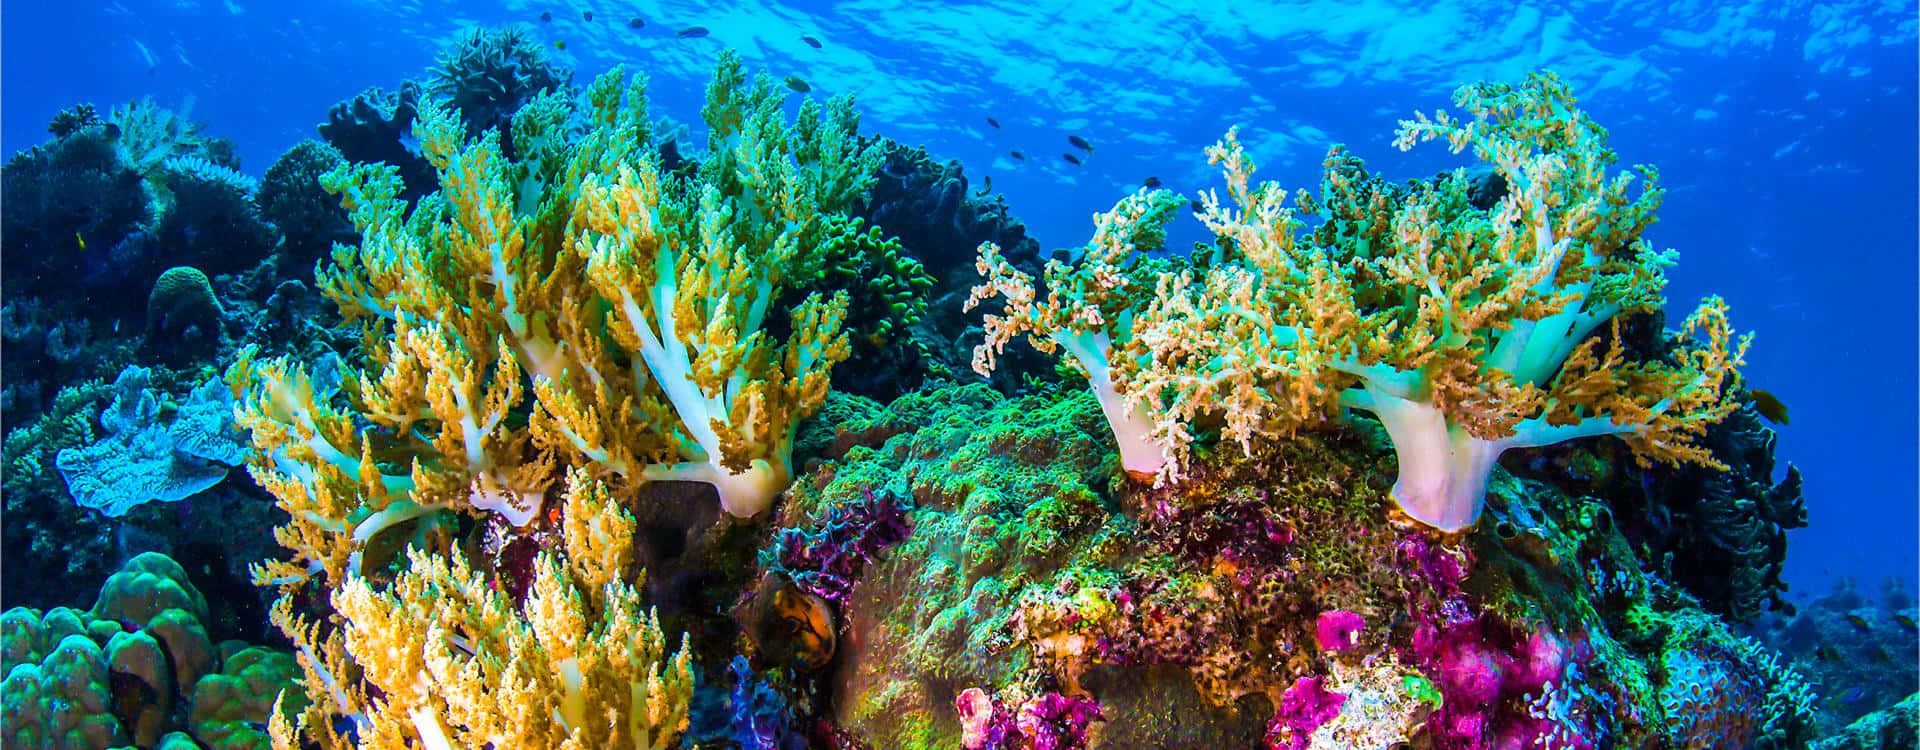 Korallrevundervattensskapelser Australien Bild.